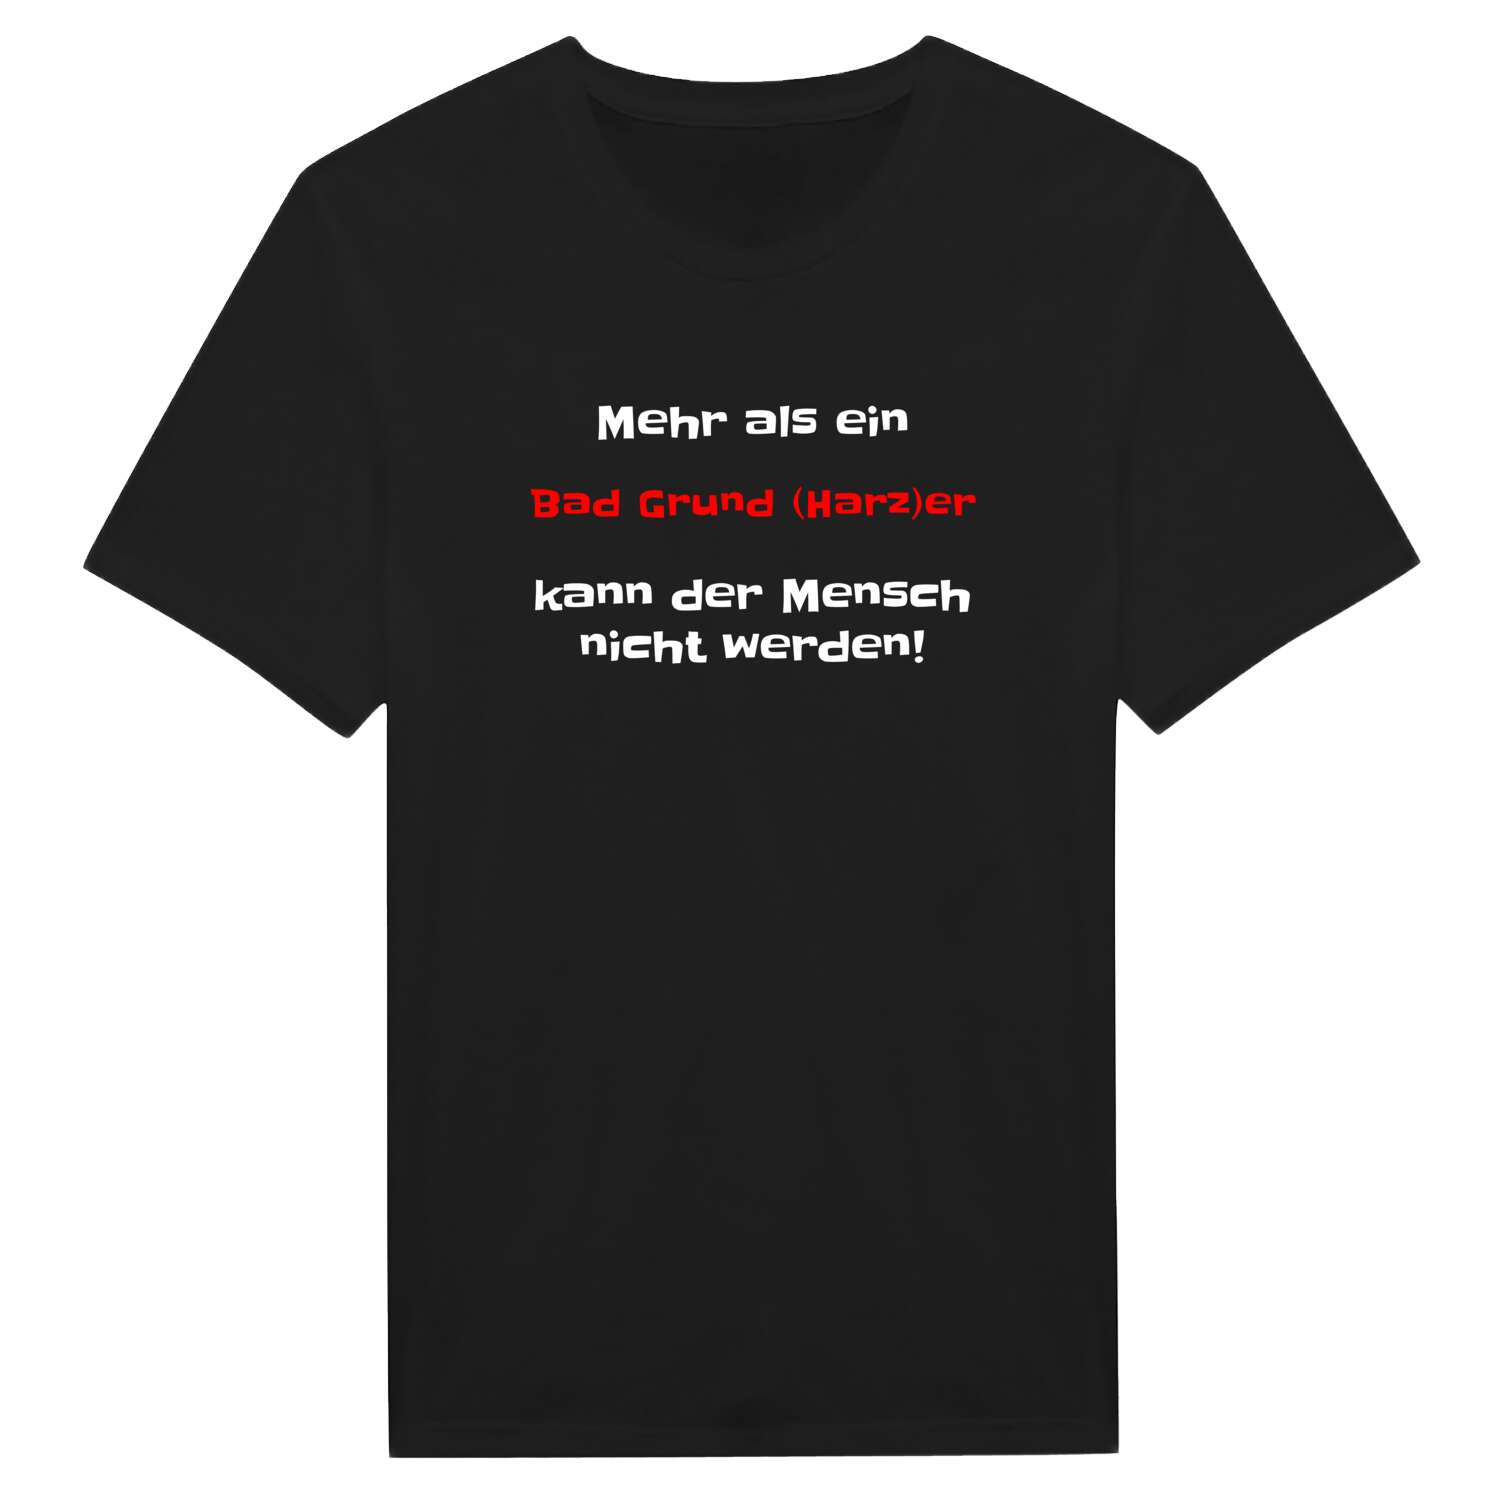 Bad Grund (Harz) T-Shirt »Mehr als ein«